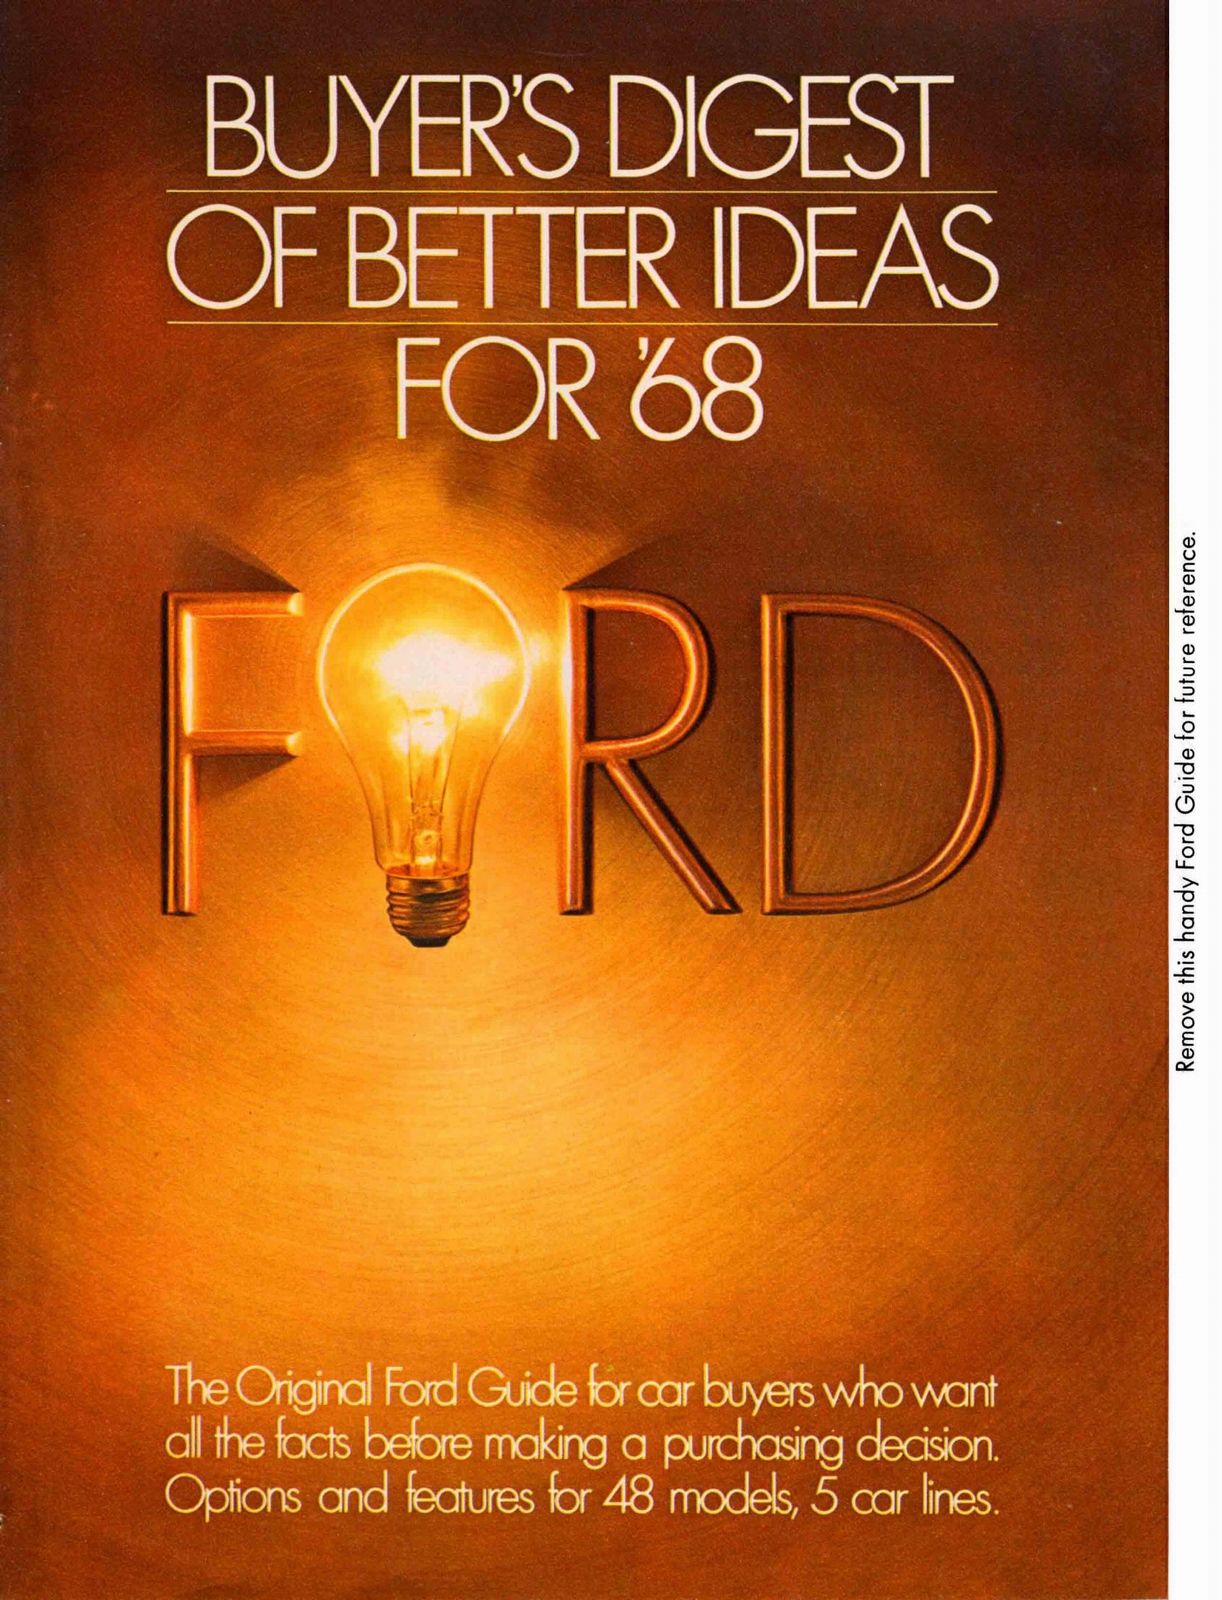 n_1968 Ford Better Ideas Insert-01.jpg